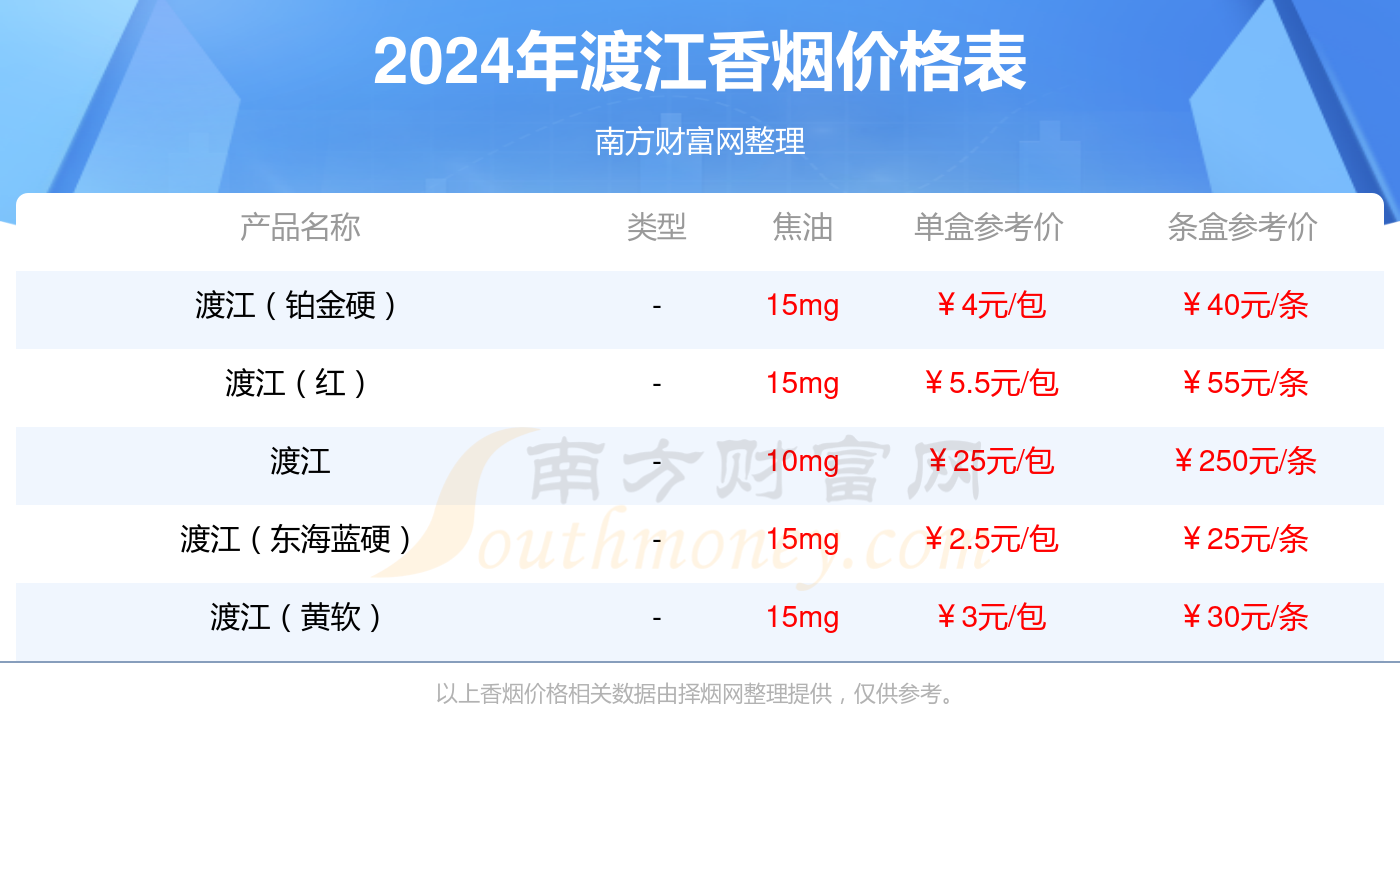 2024年渡江(东海蓝软)香烟价格查询